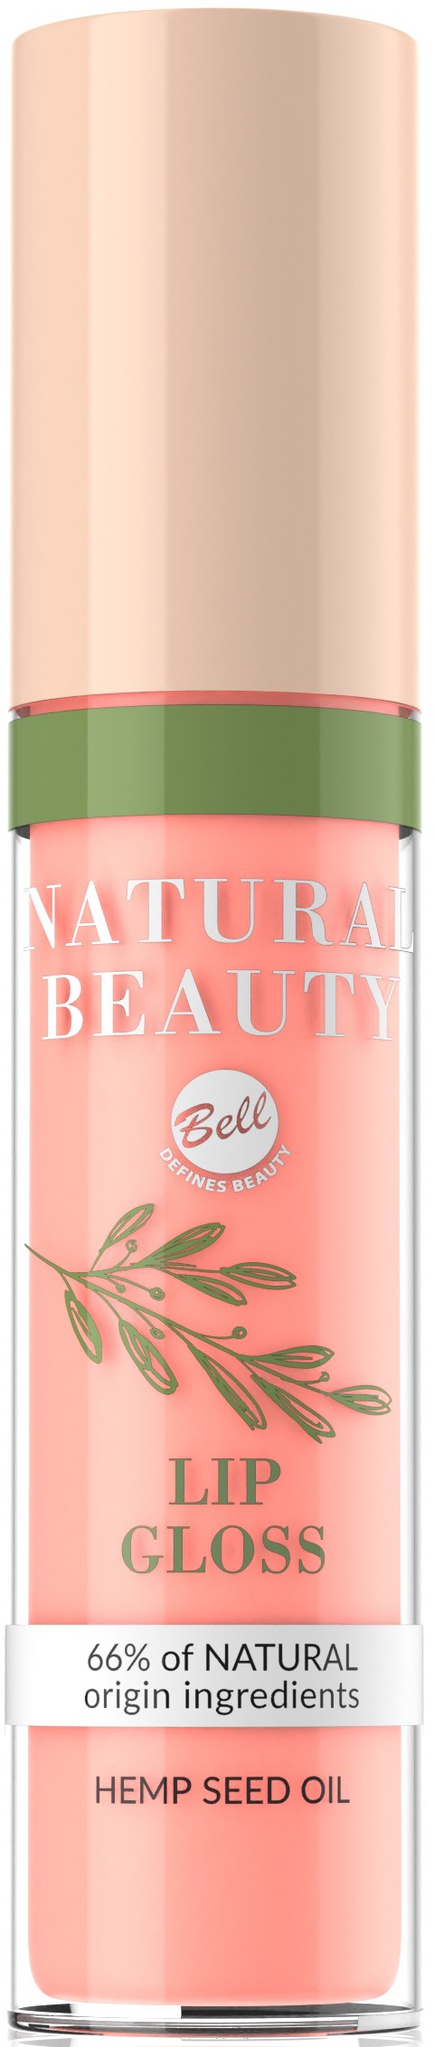 Bell Natural Beauty Lip Gloss